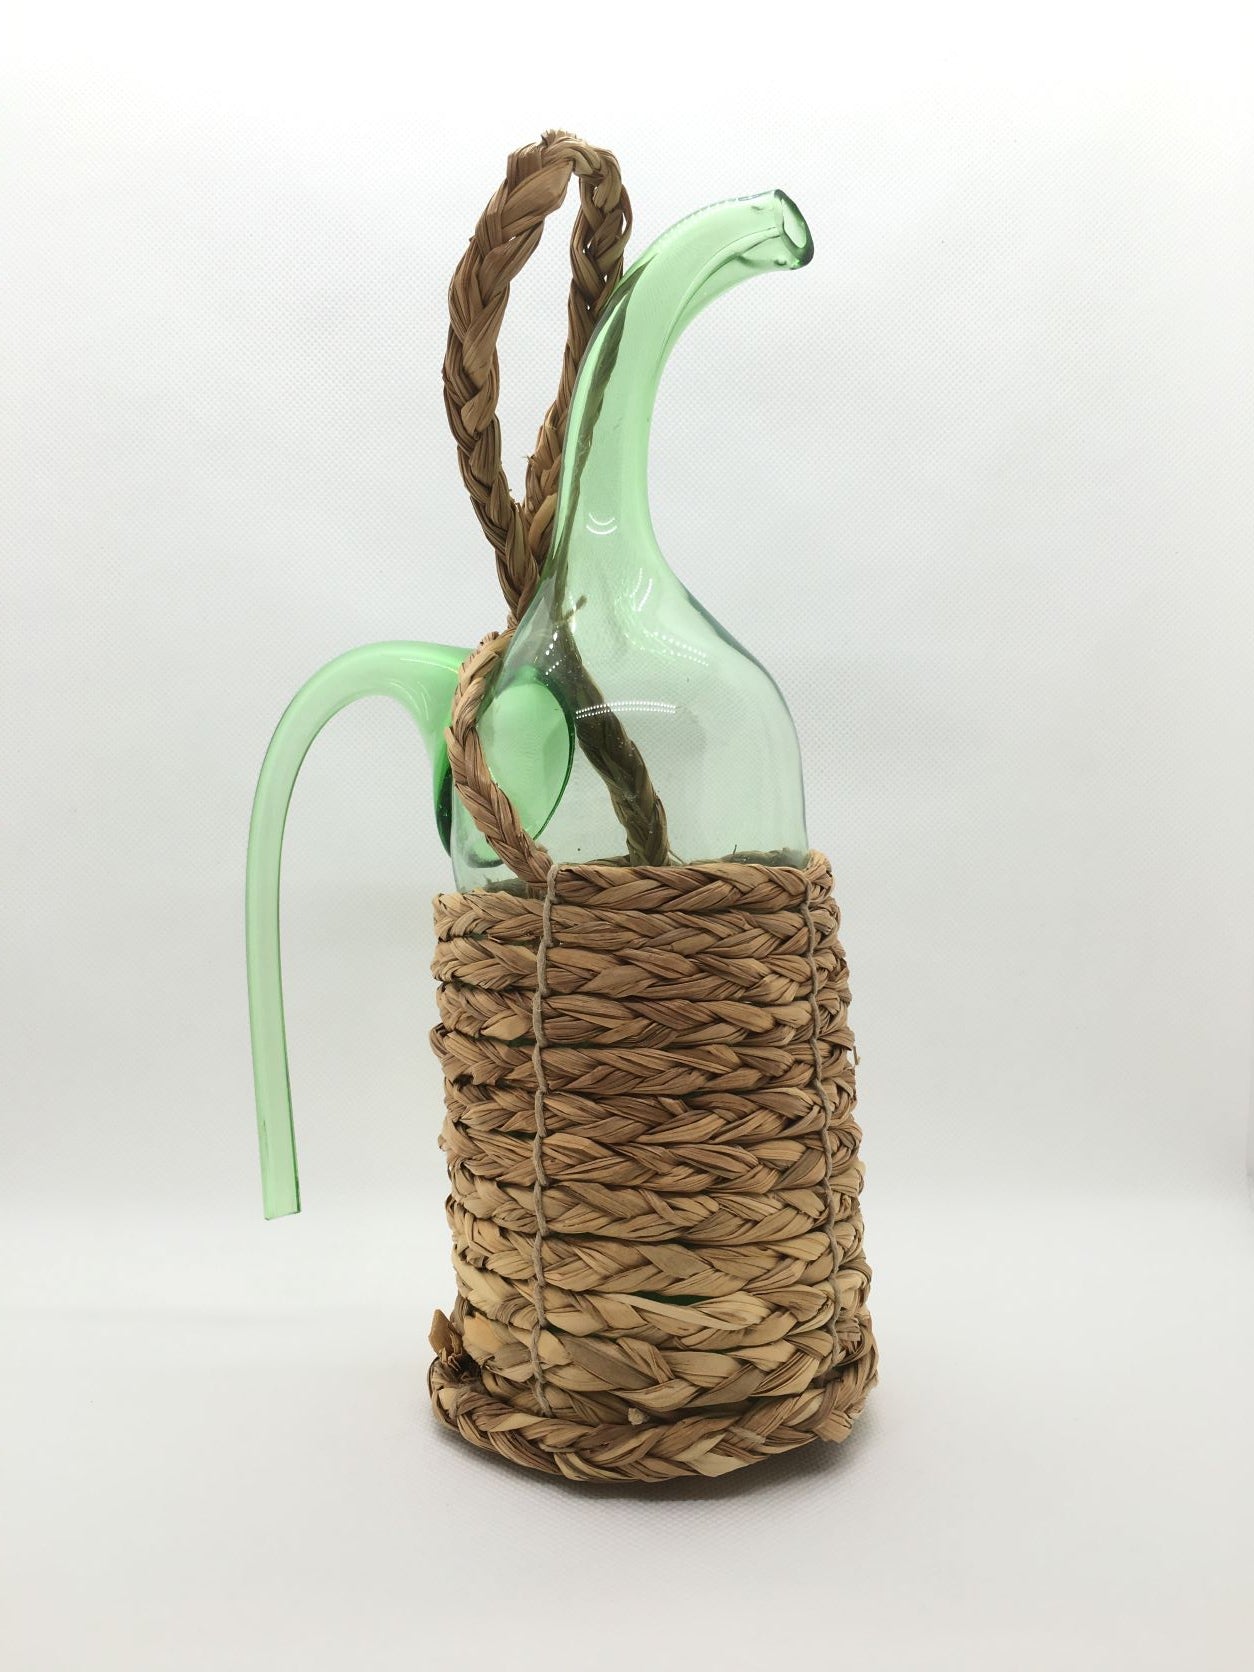 Bottiglia decorativa aspiraliquidi in vetro ricoperta con paglia intrecciata naturale. Dimensioni: cm 16 x 25 h. In negozio e online su tuttochic.it